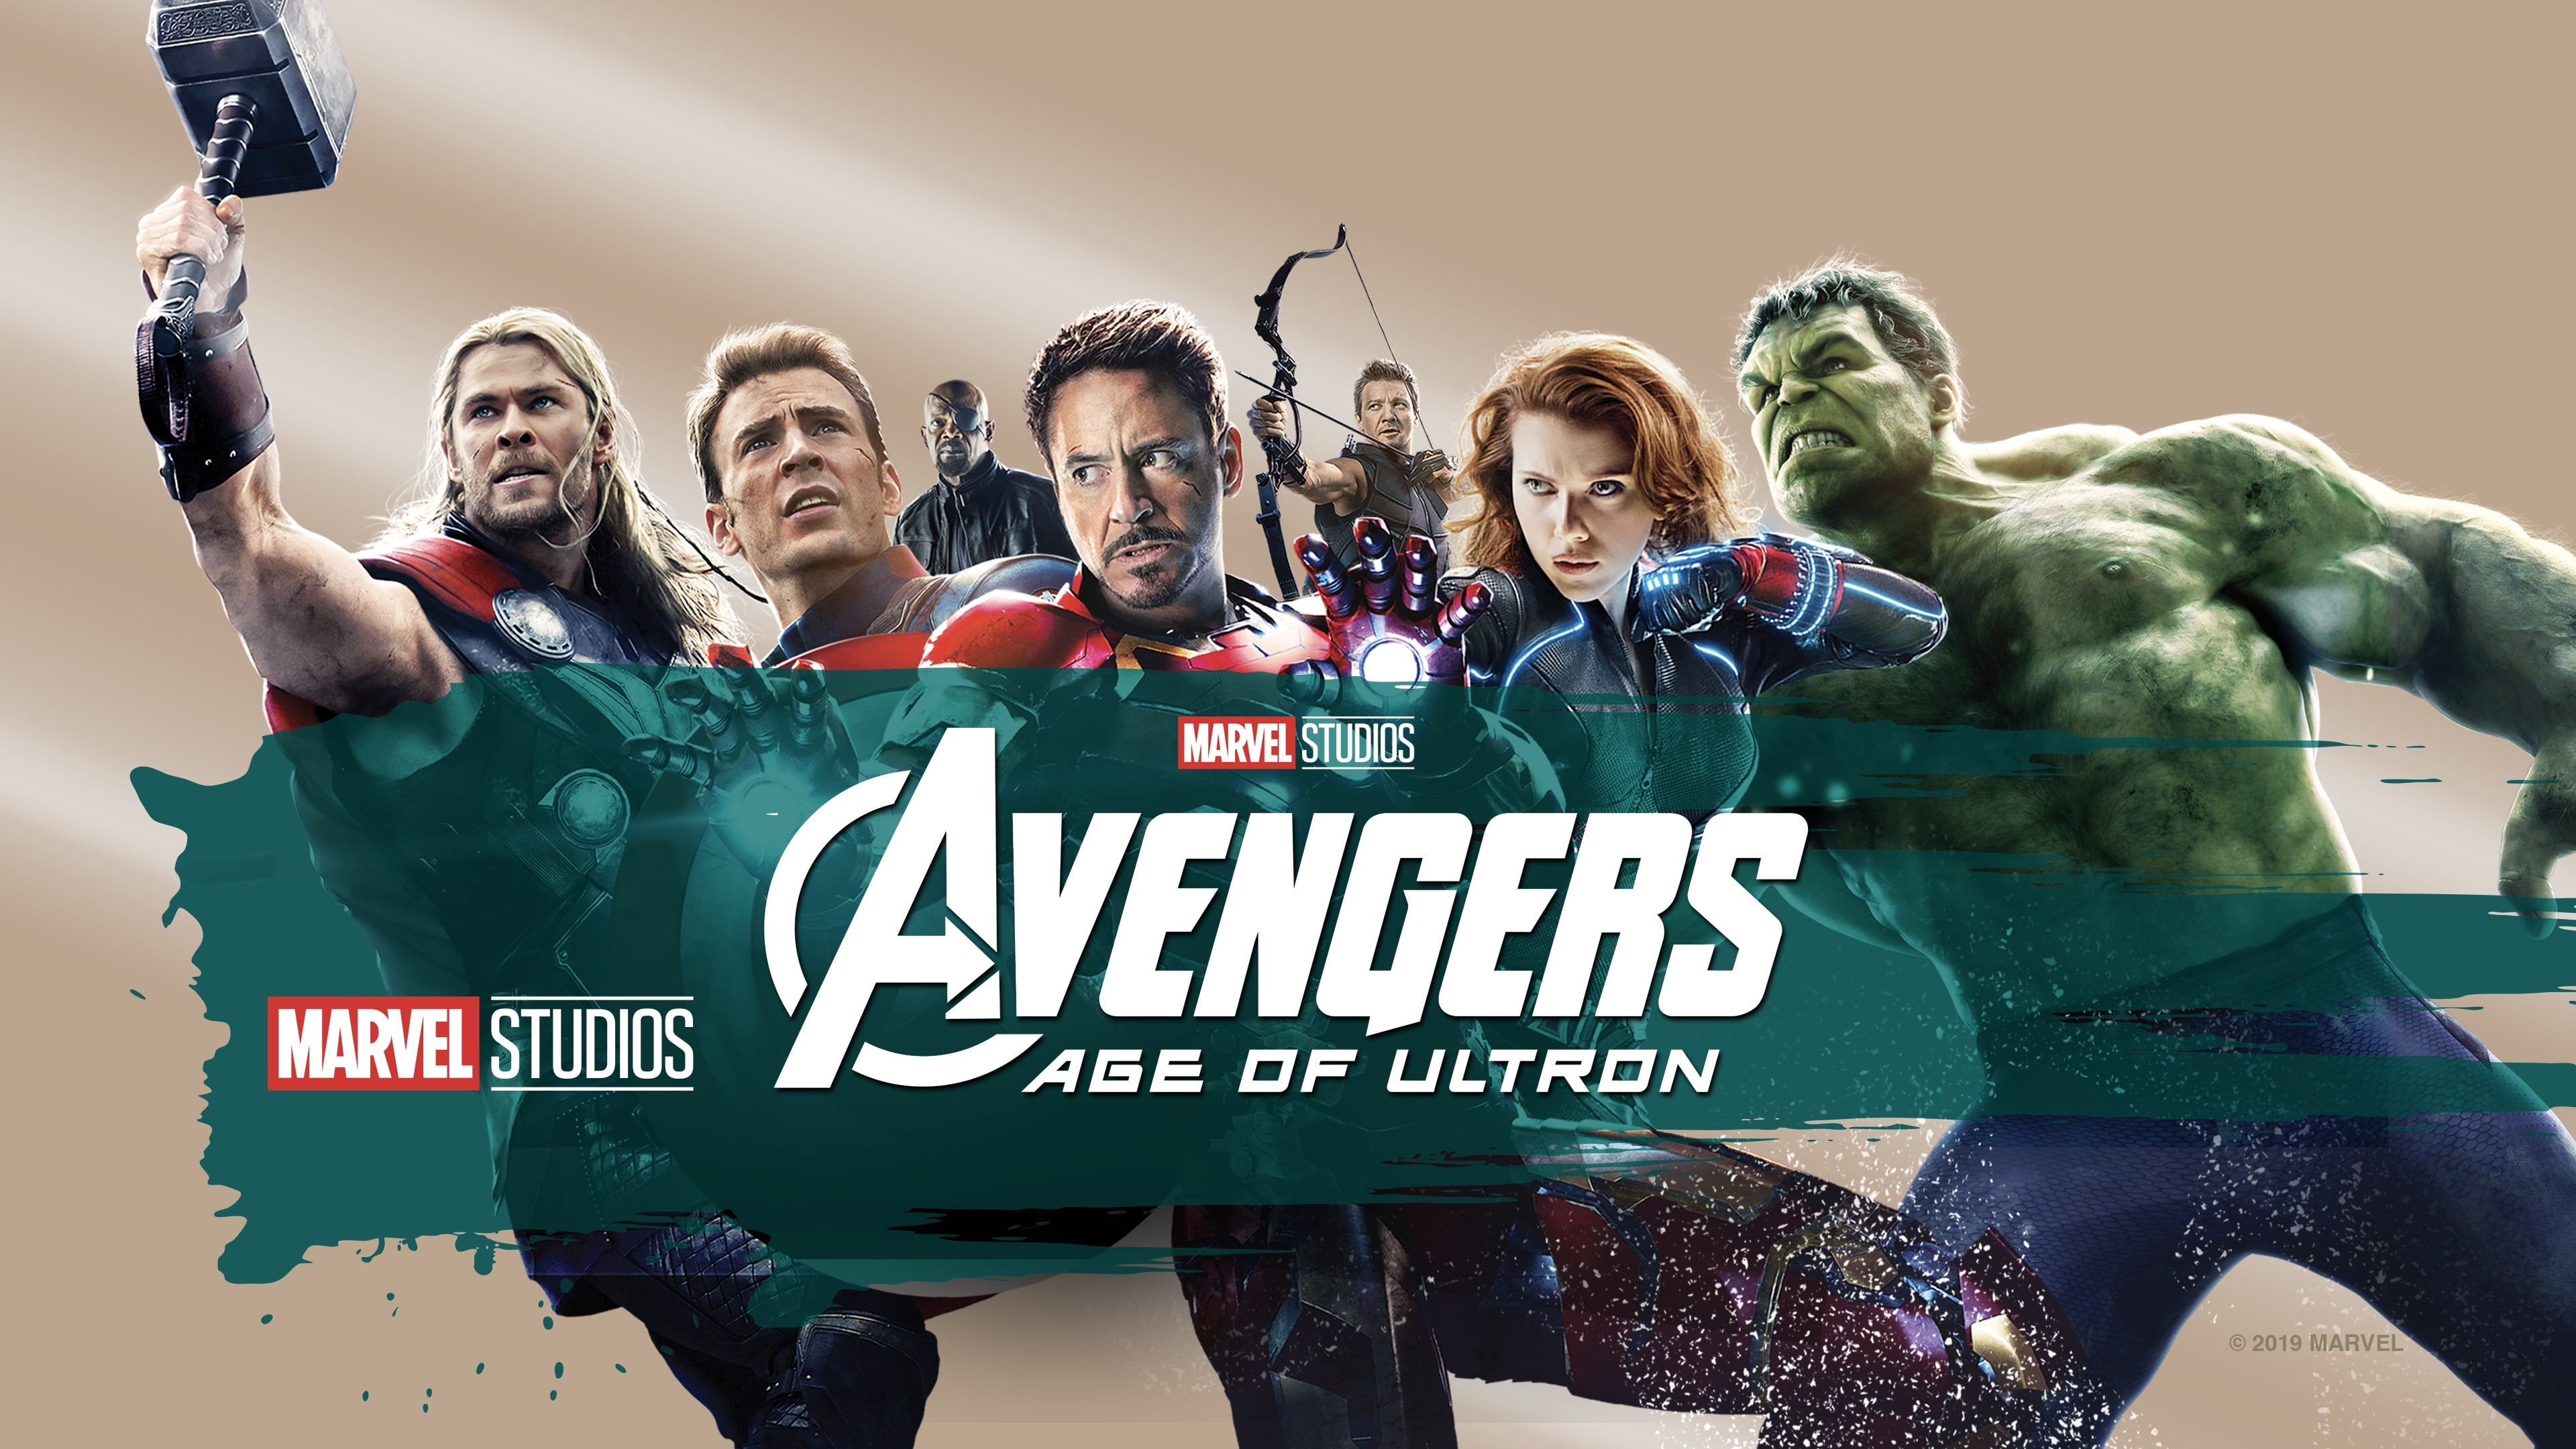 Avengers: Age of Ultron 4k Ultra HD Wallpaper